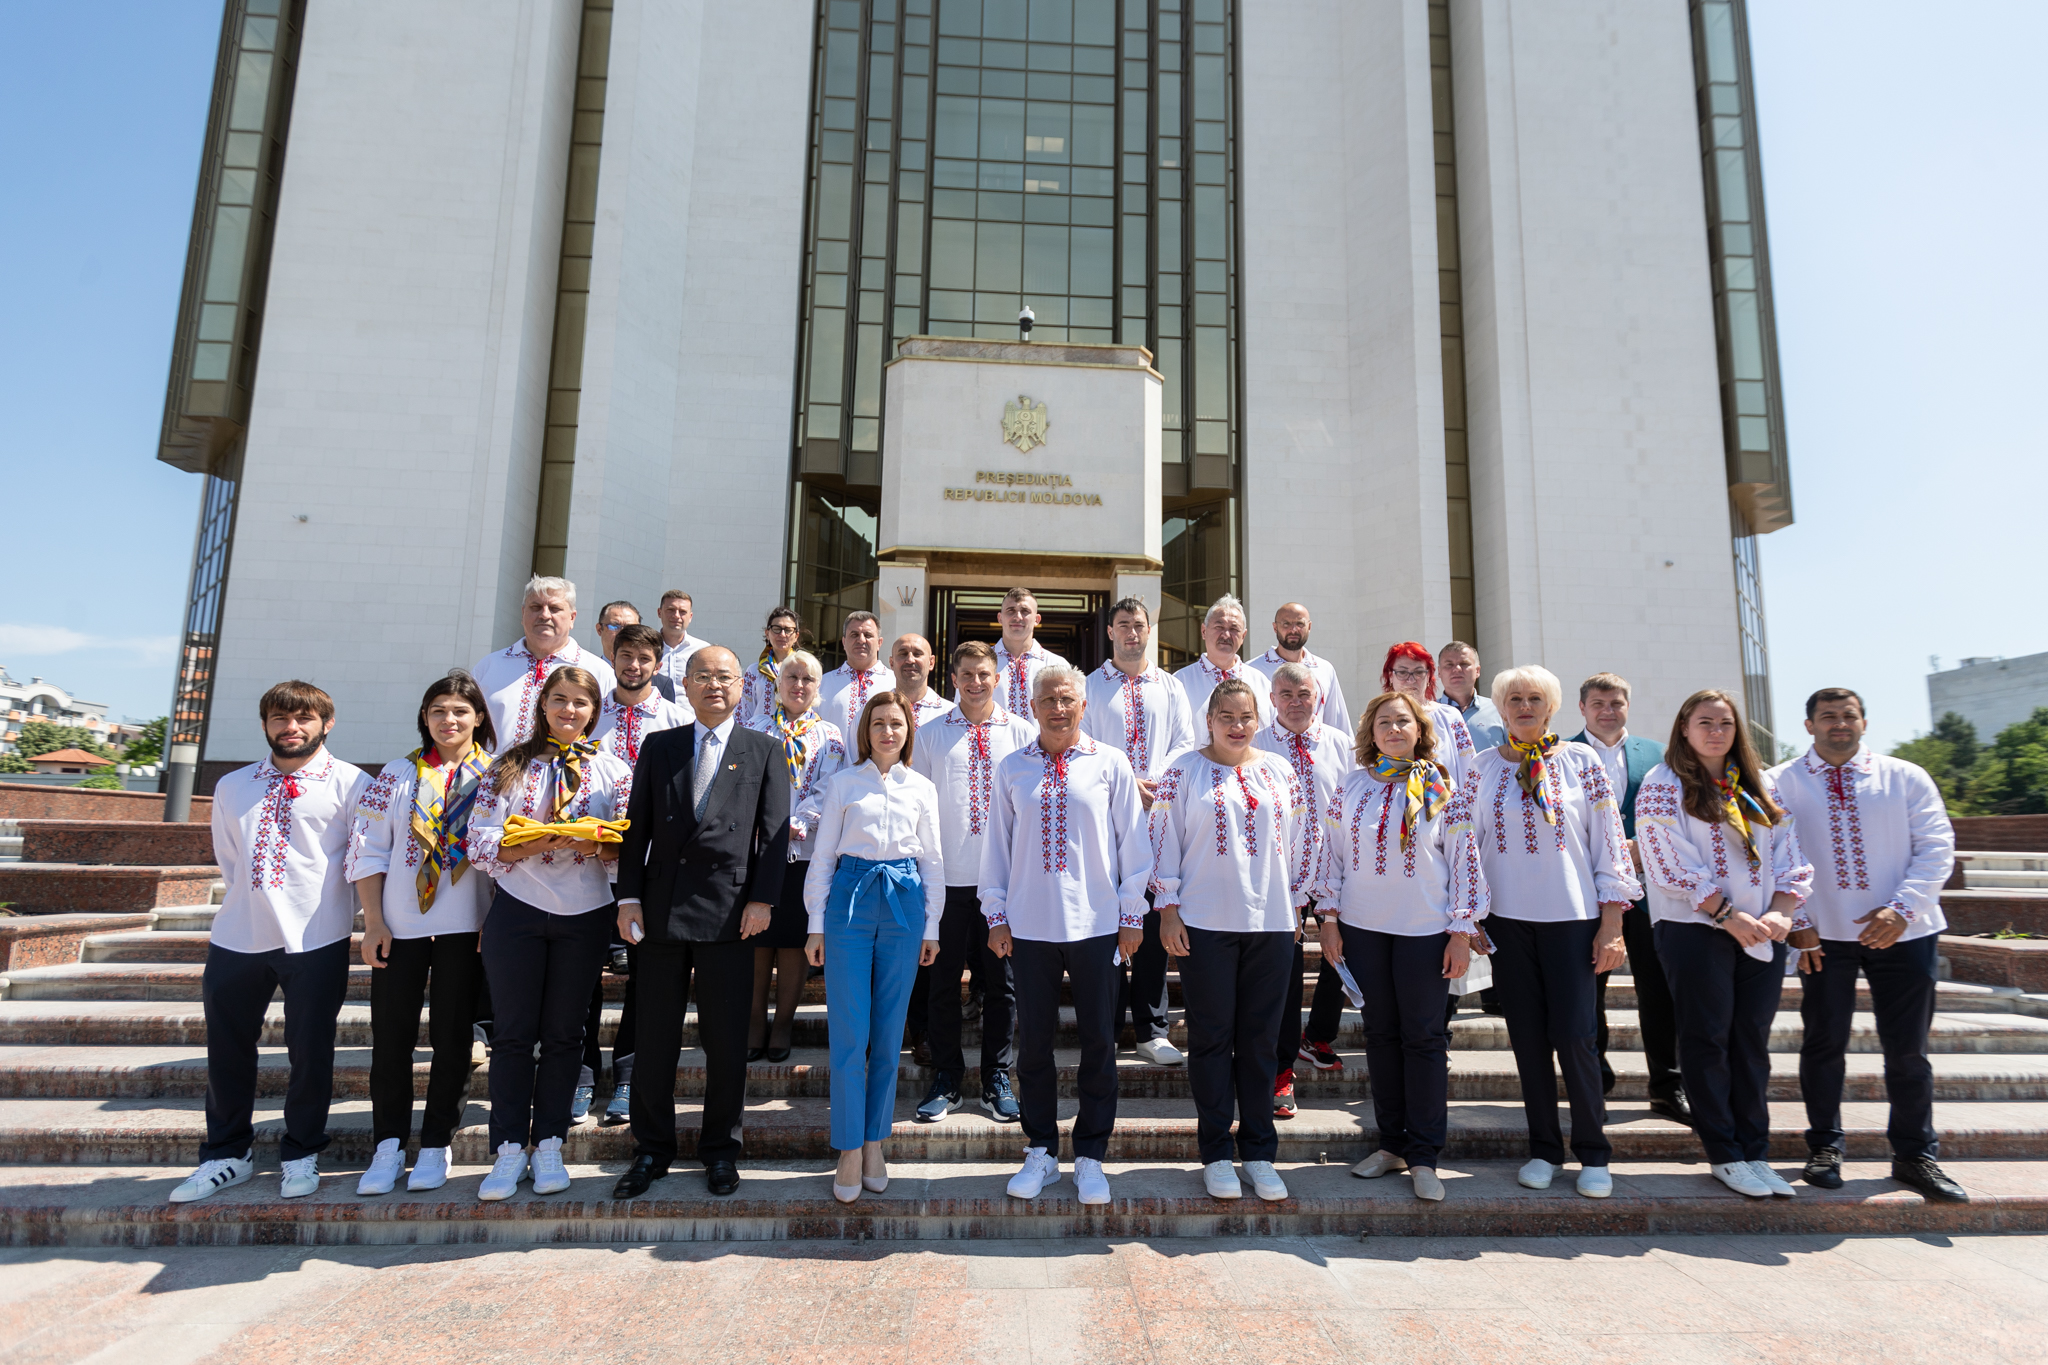 Санду вручила флаг Молдовы спортсменам, которые поедут на Олимпийские игры в Токио